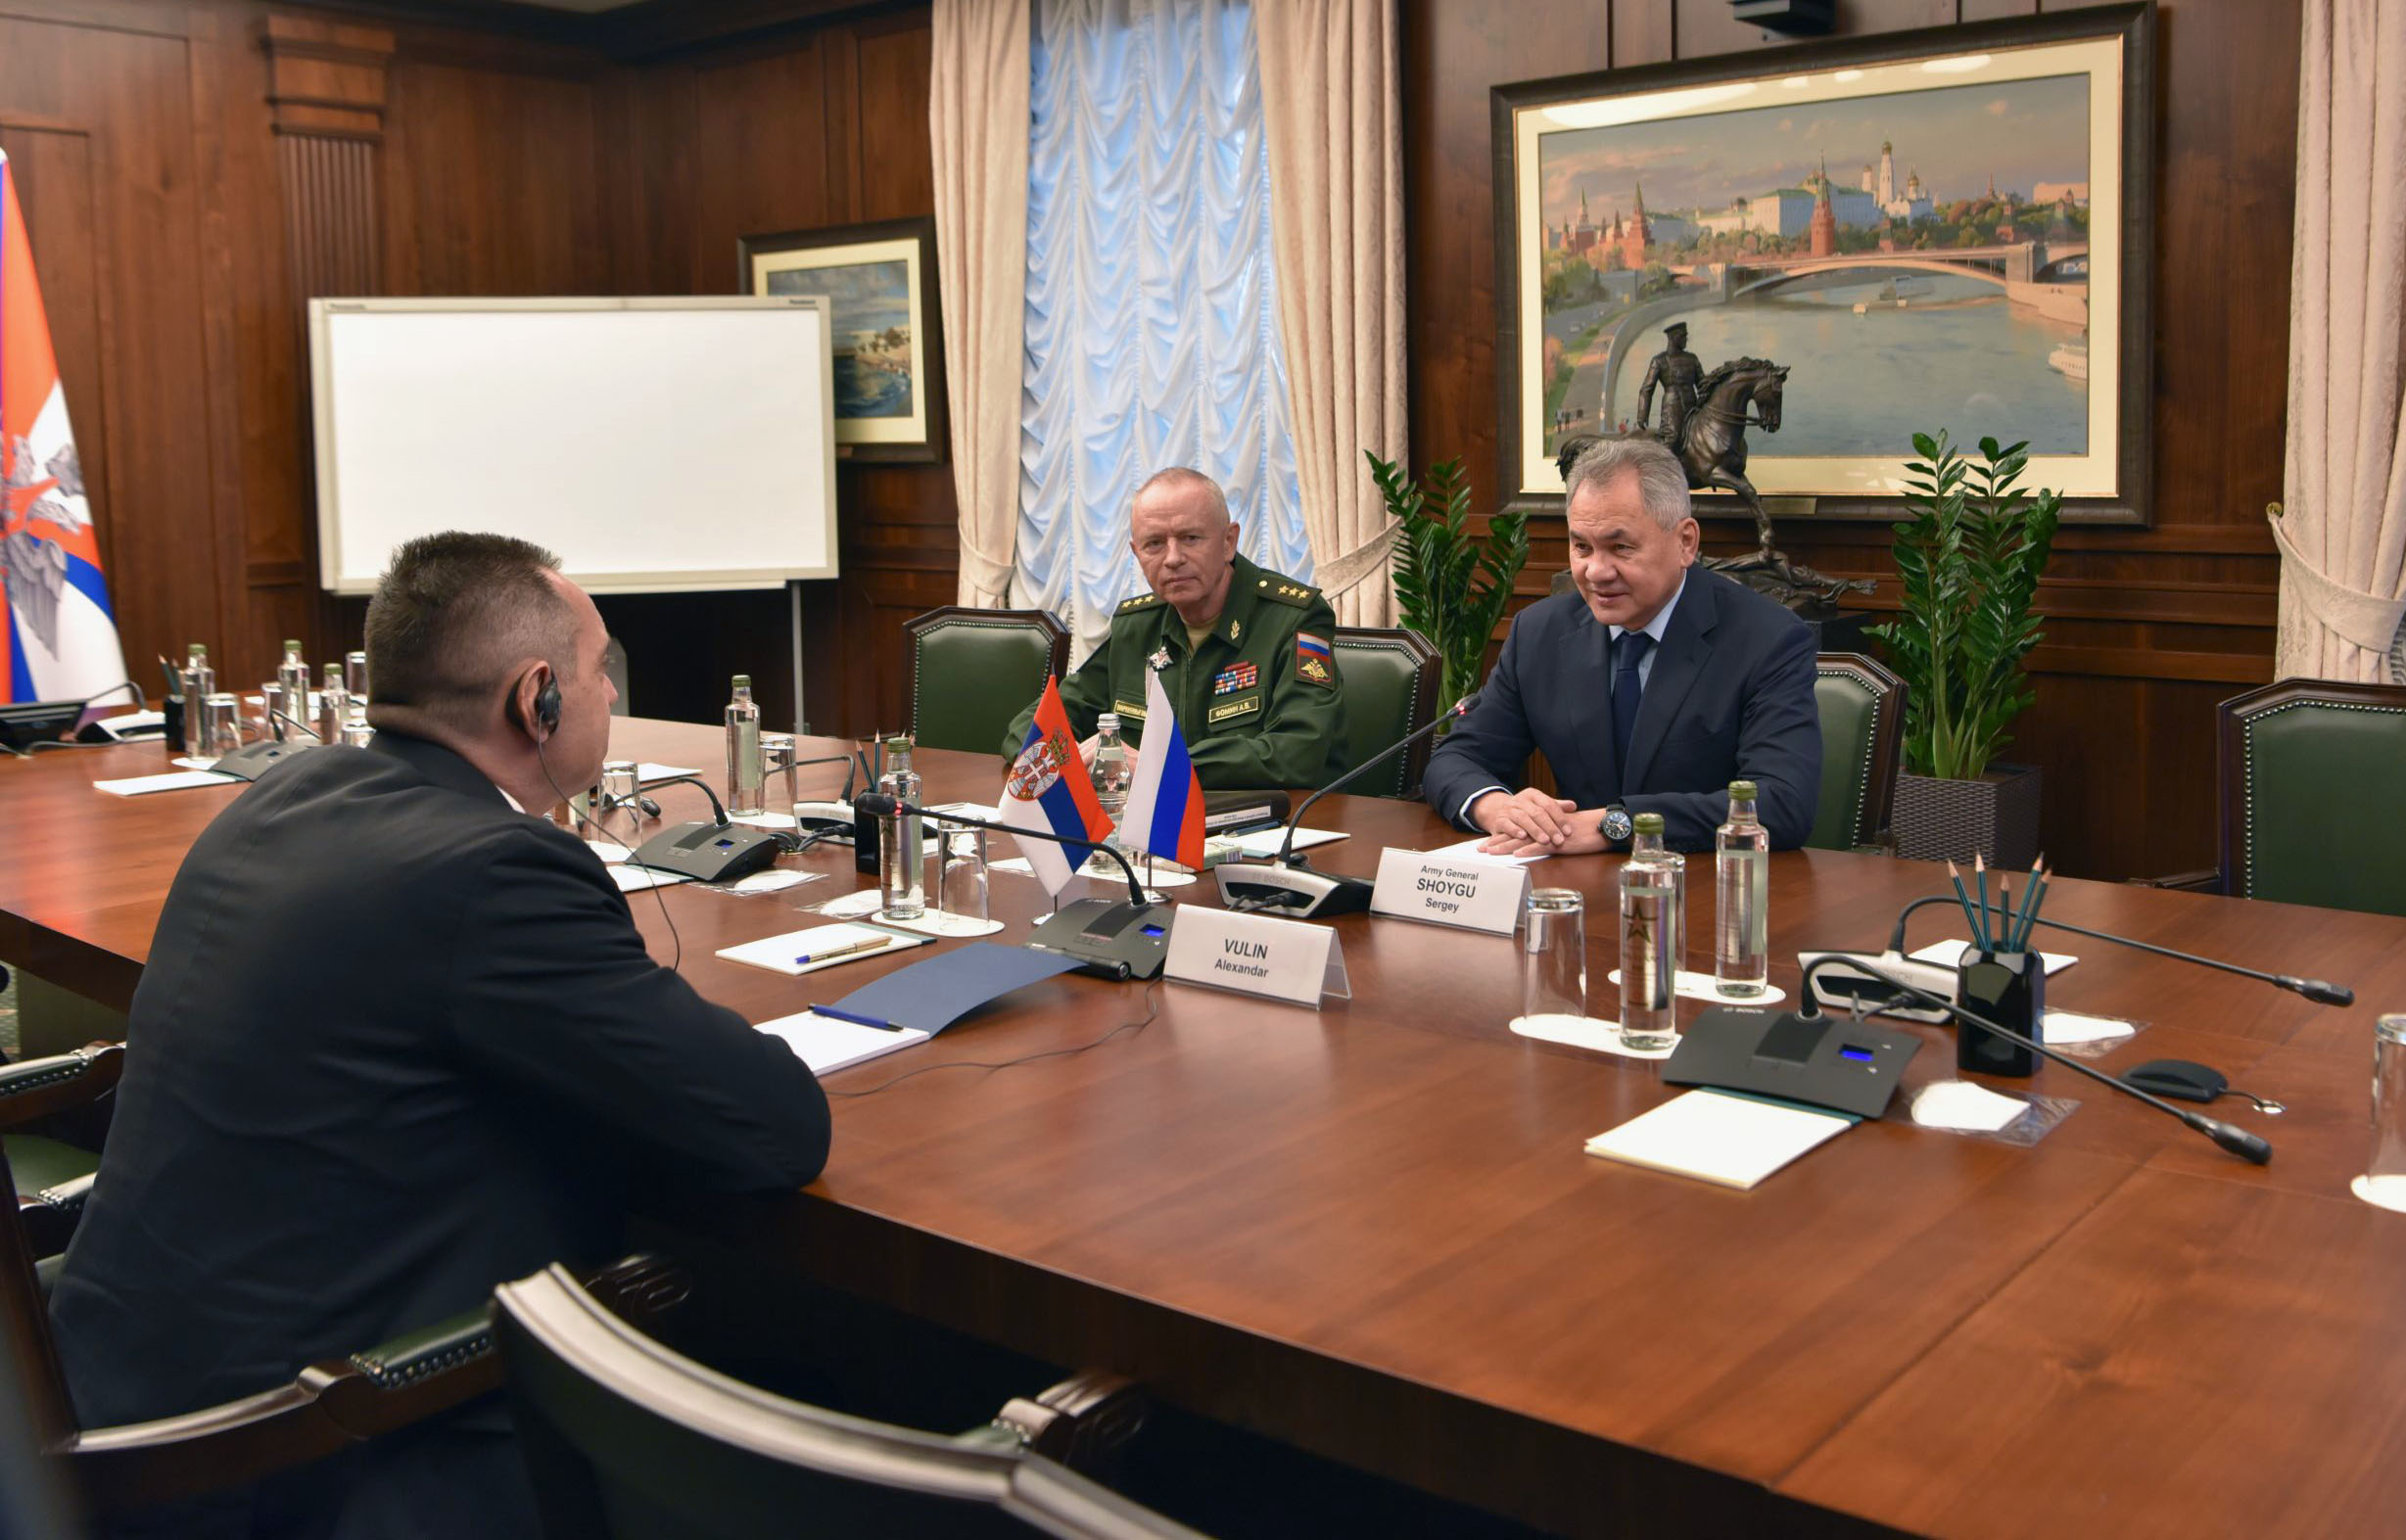 Ministri Vulin i Šojgu saglasili su se da saradnja između Srbije i Ruske Federacije nikada nije bila na ovako visokom nivou